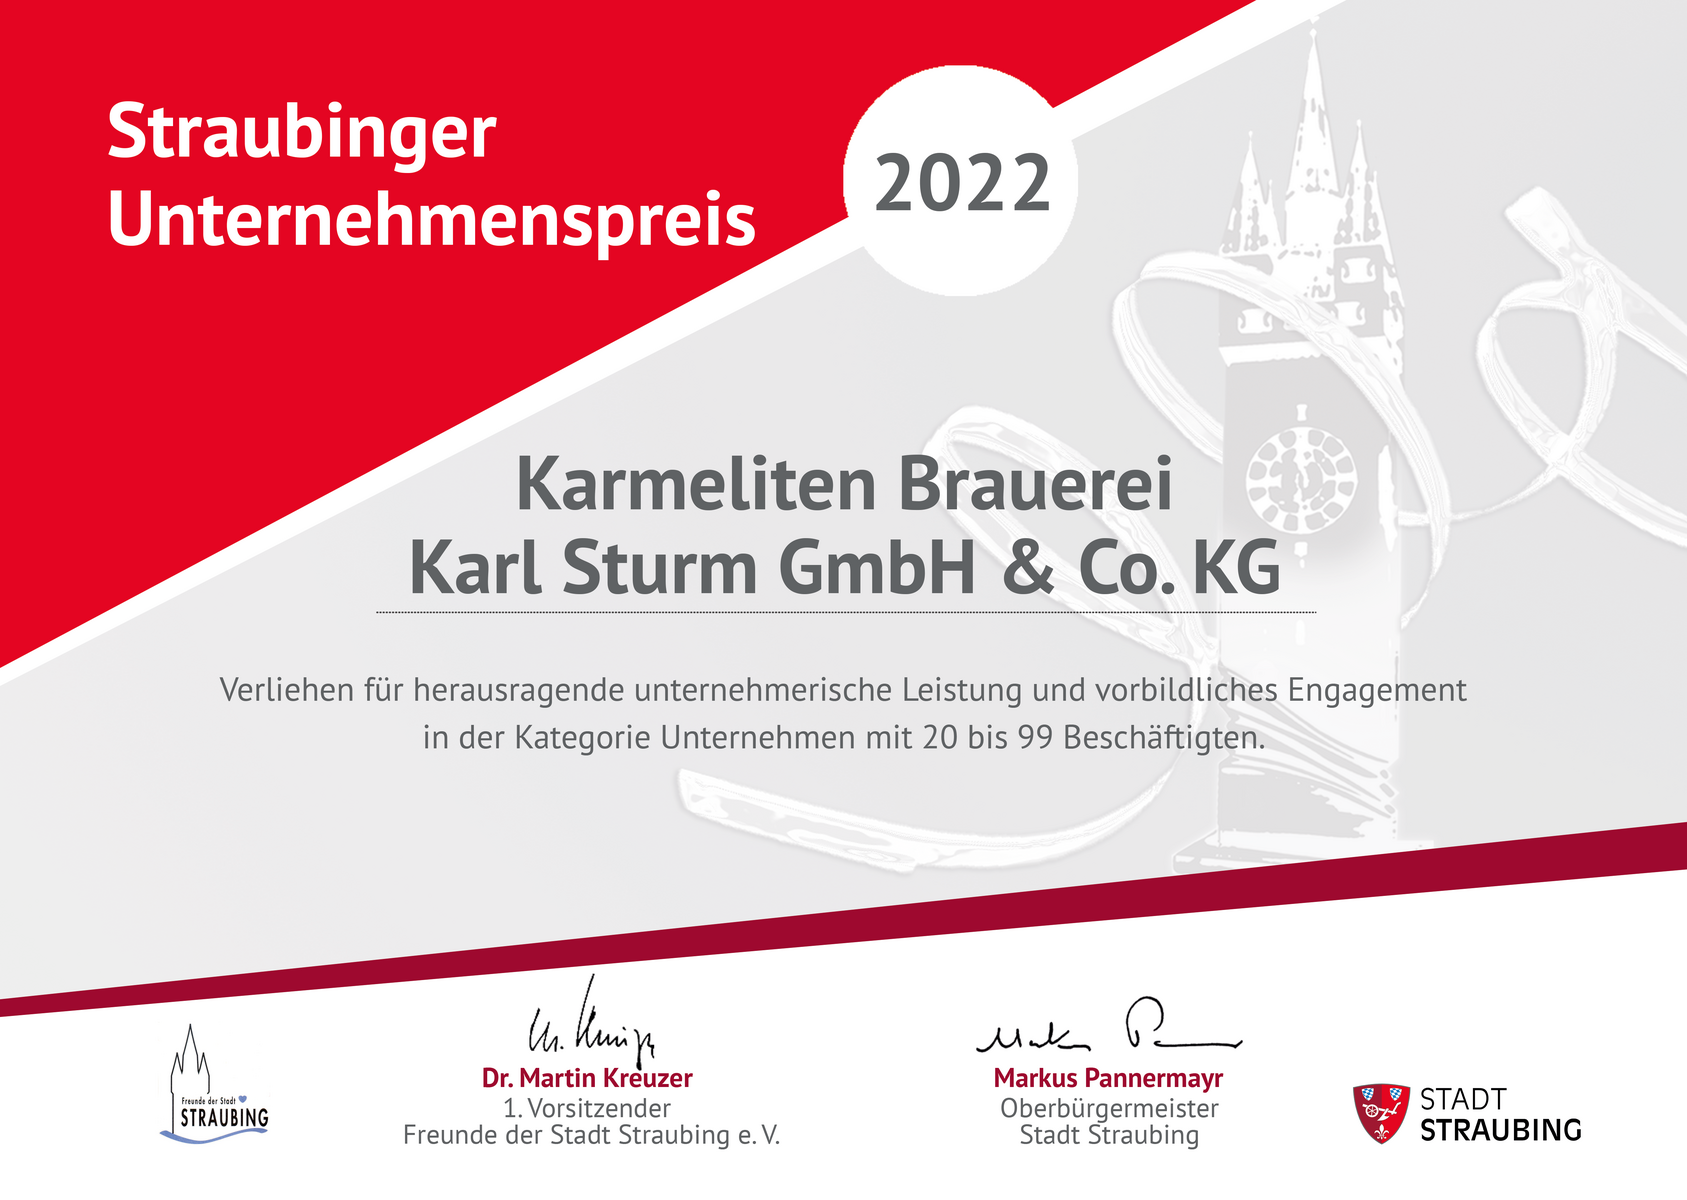 Karmeliten_2022_Unternehmenspreis_Urkunde